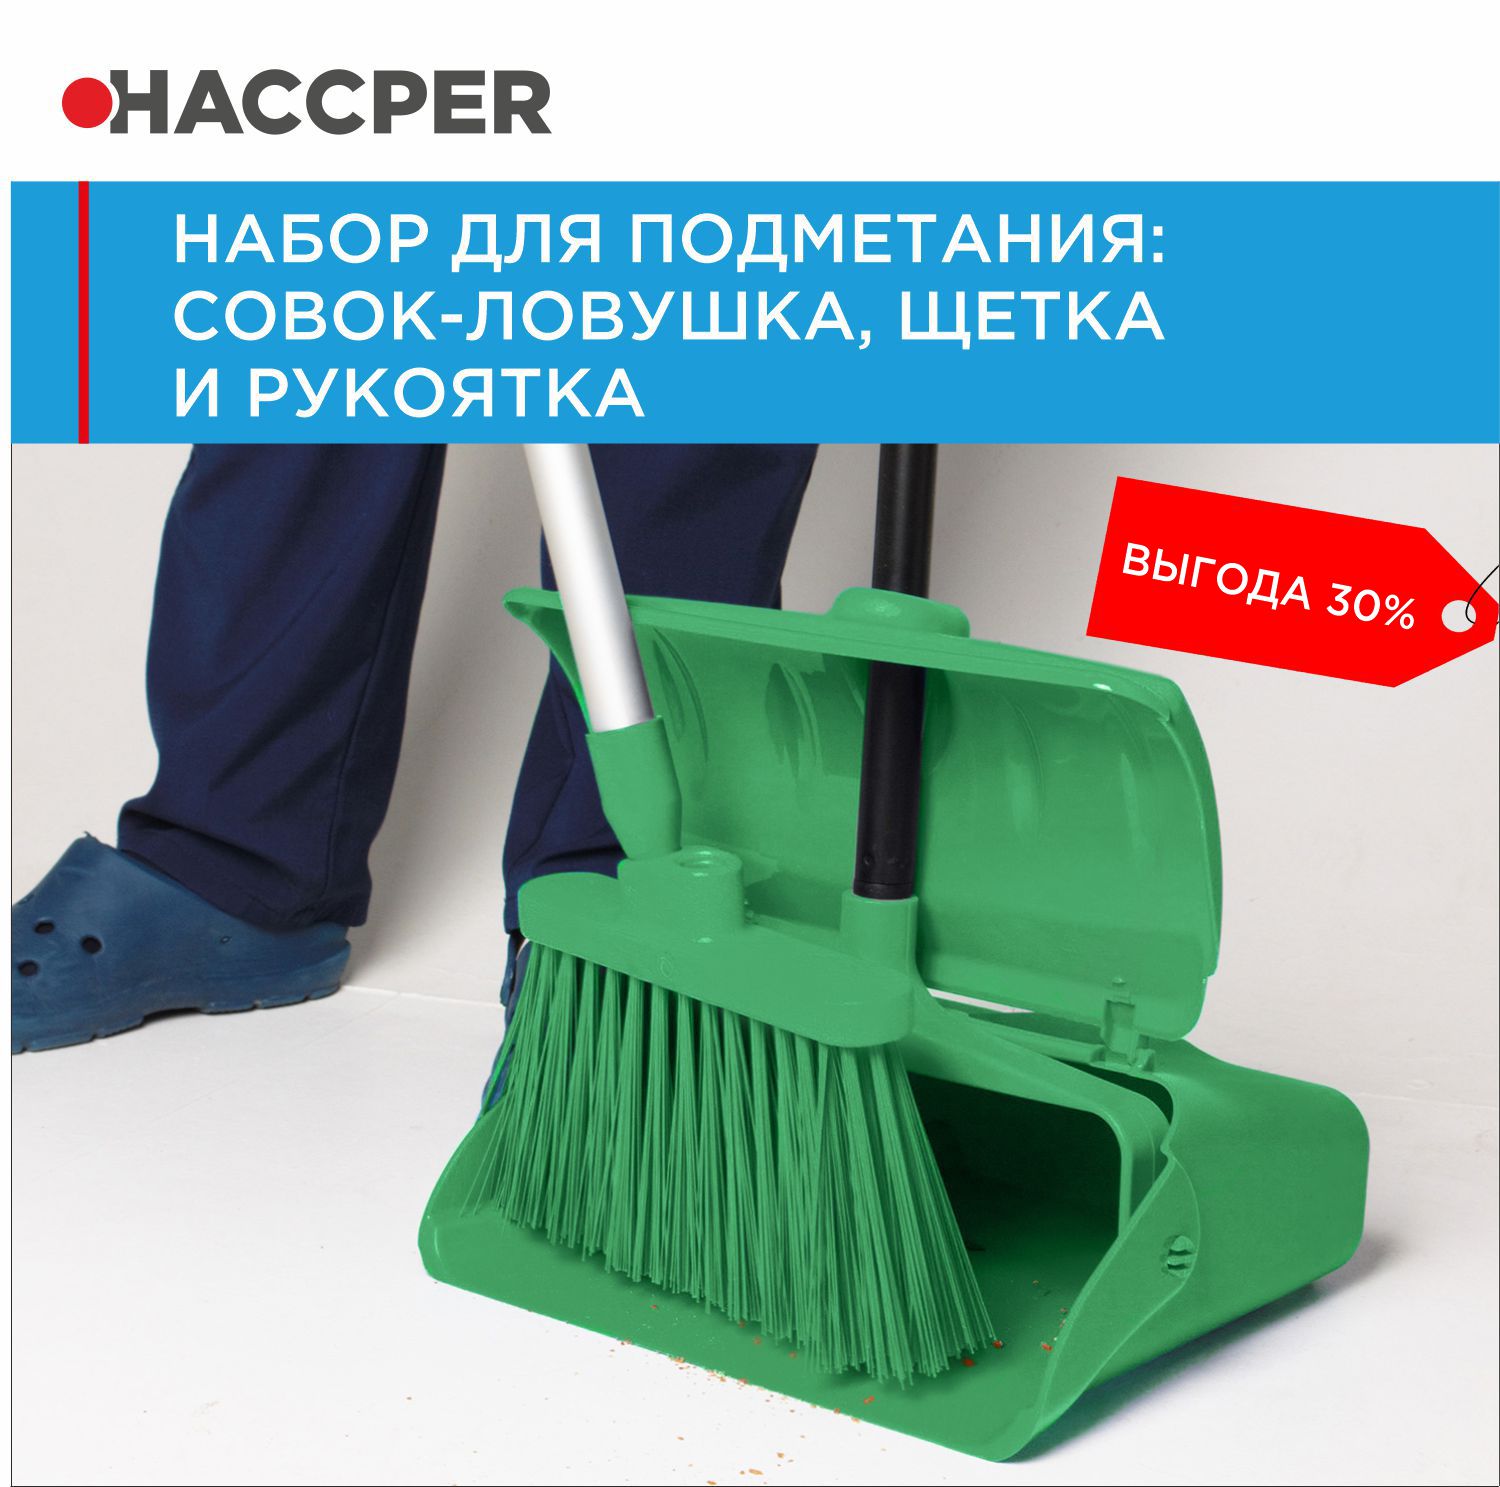 Набор для подметания  HACCPER совок-ловушка, щетка и рукоятка, зеленый